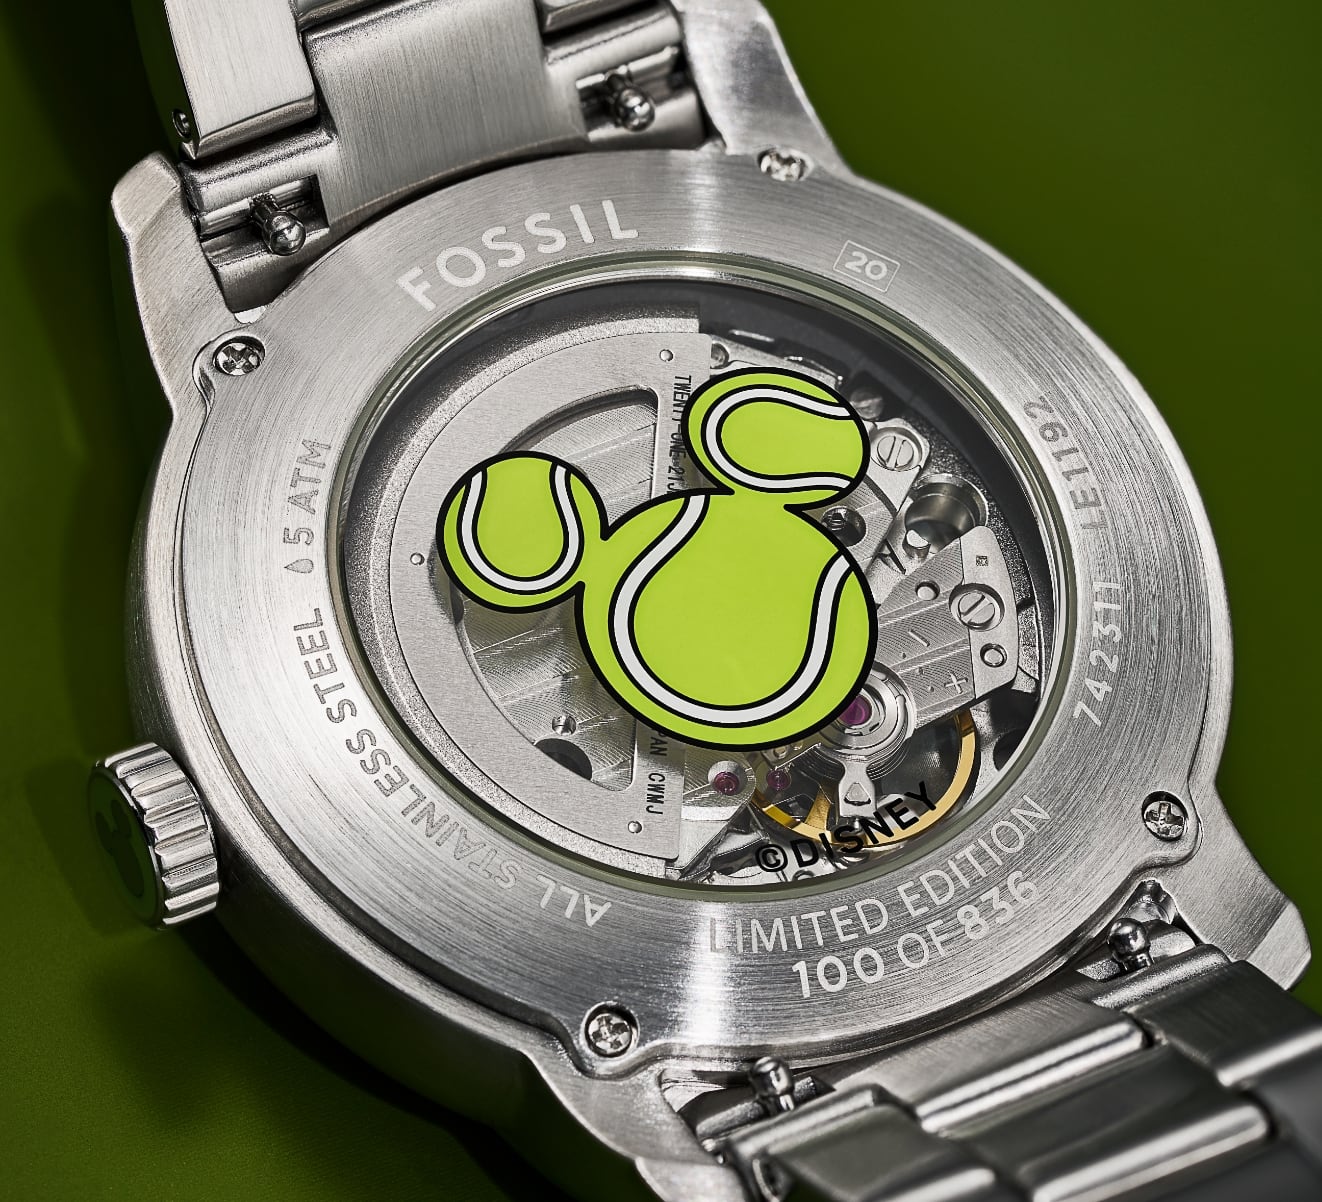 Ein GIF mit zwei Bildern, die den individuellen Gehäuseboden und die Krone der Uhr zeigen. Beide Modelle haben die vom Tennis inspirierte Silhouette von Disneys Micky Maus.